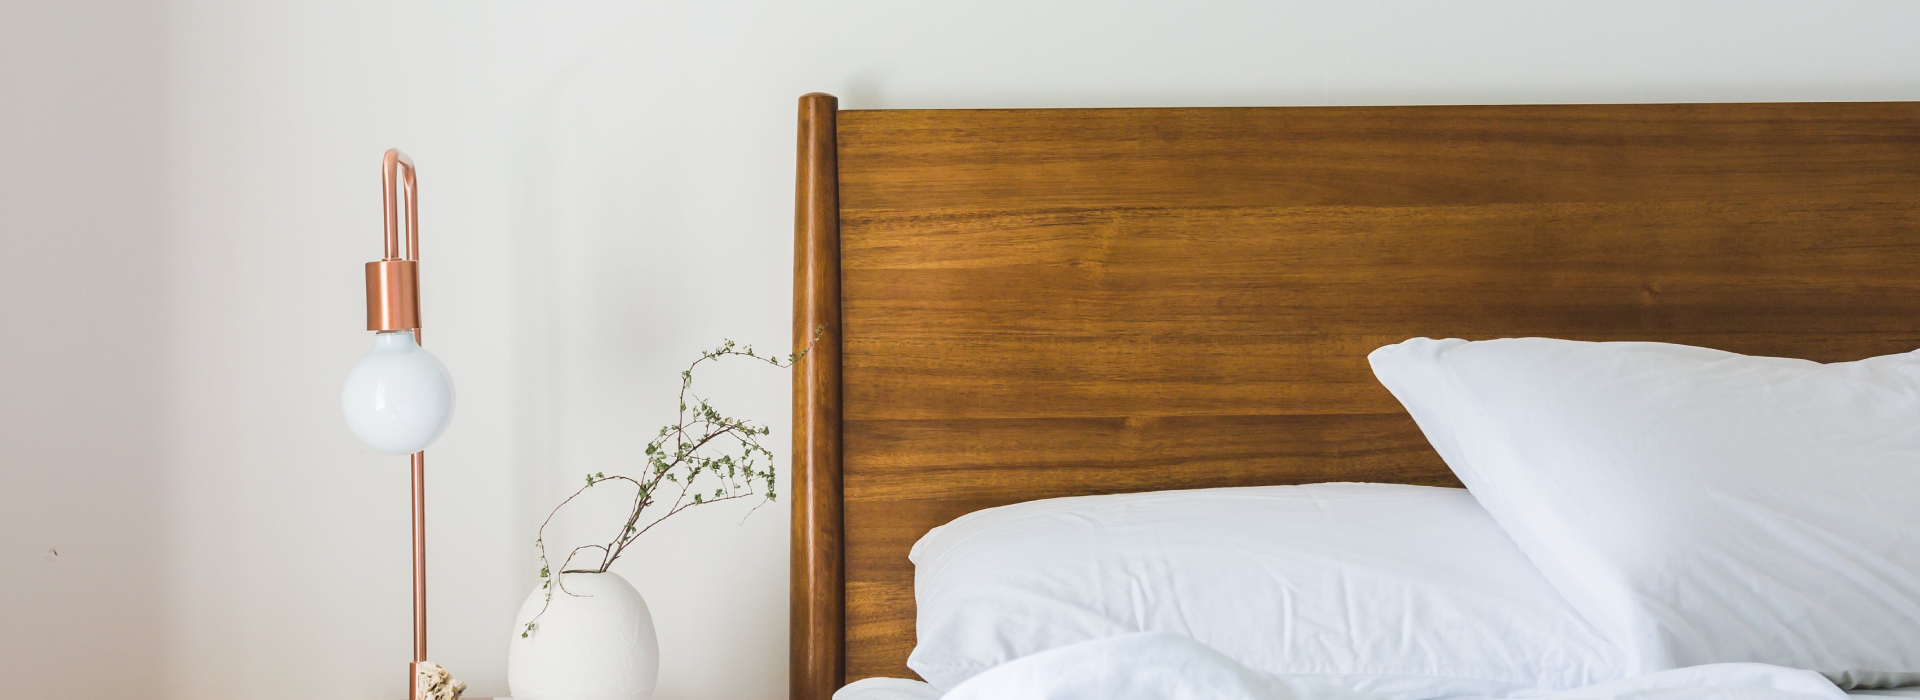 Zbliżenie na drewniane łóżko, na którym leży biała pościel. Po lewej stronie widoczna szafka nocna z marmurowym blatem, na której stoi lampka oraz mały wazon z gałązkami.